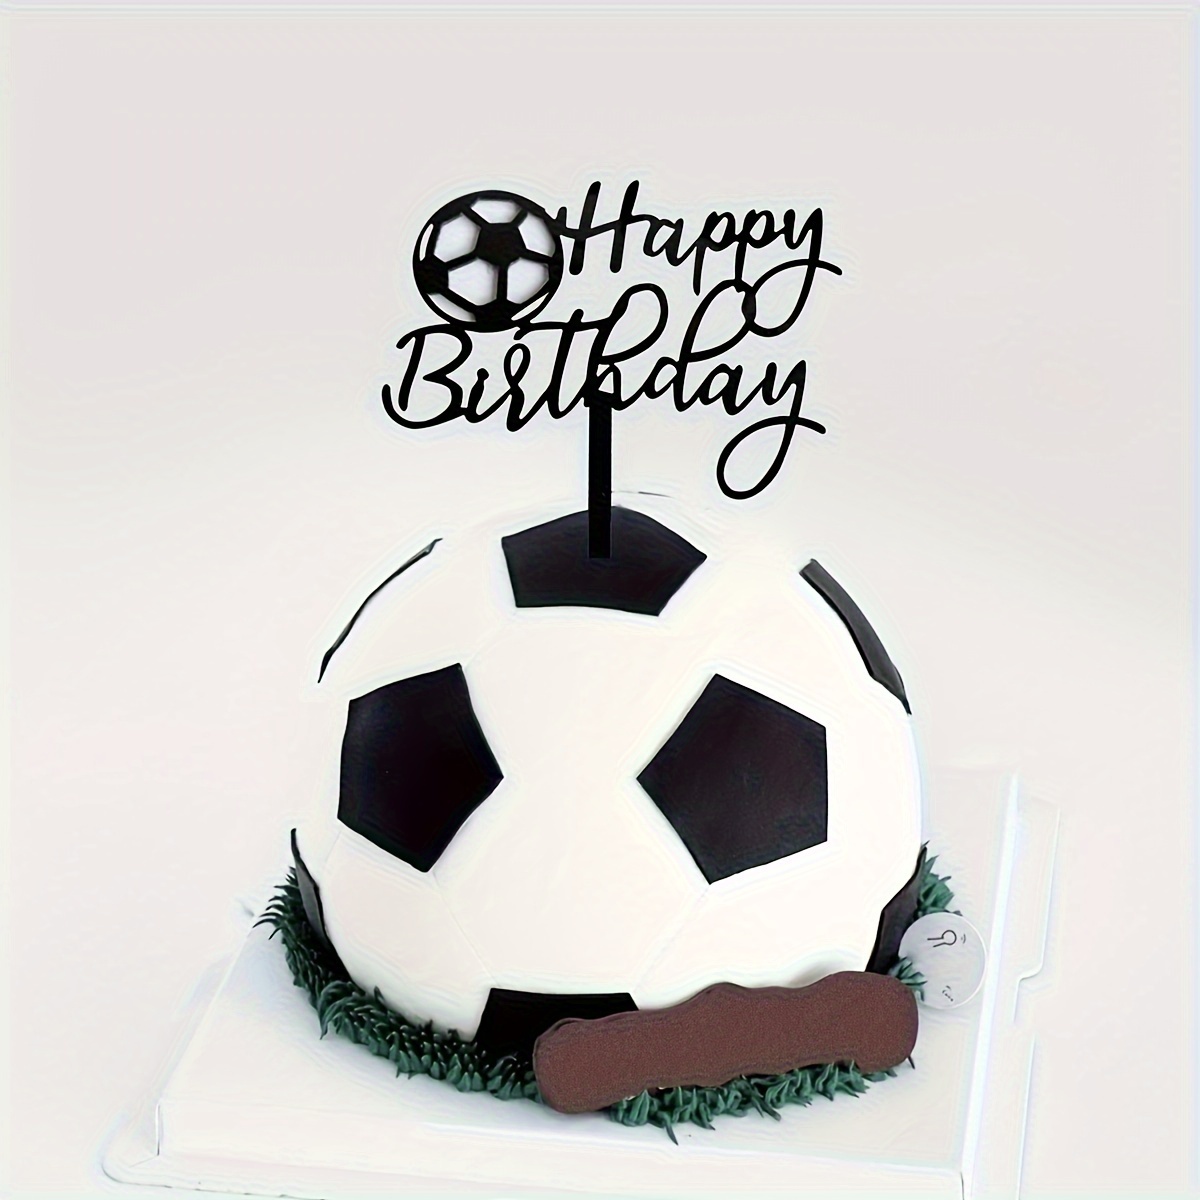 31 piezas de decoración de pastel de fútbol, jugador de pelota de fútbol,  decoración de pasteles para fútbol, temática de fútbol, suministros de